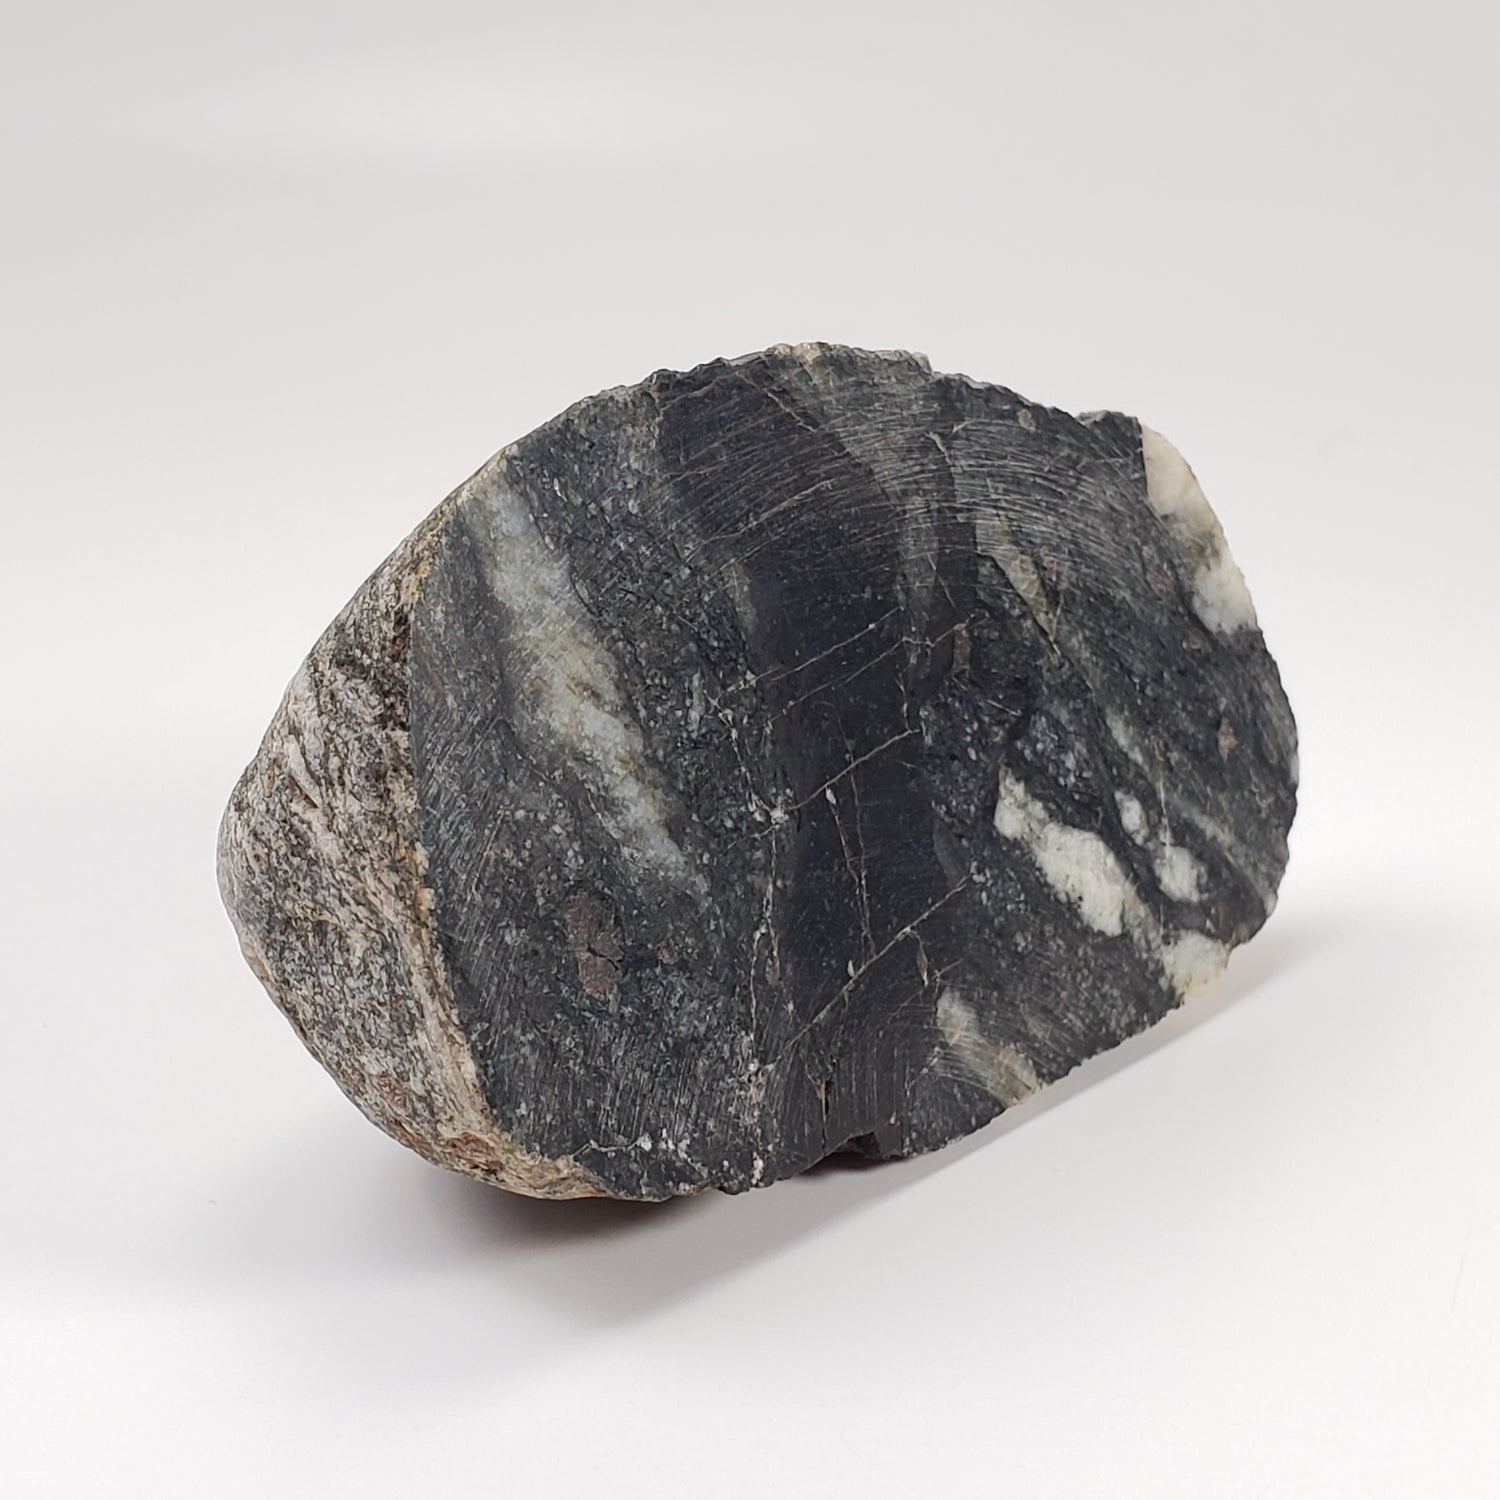 Dellenites Impact Melt Rock | 207.4 grams | HT Tagamite | Dellen Crater, Sweden | Canagem.com